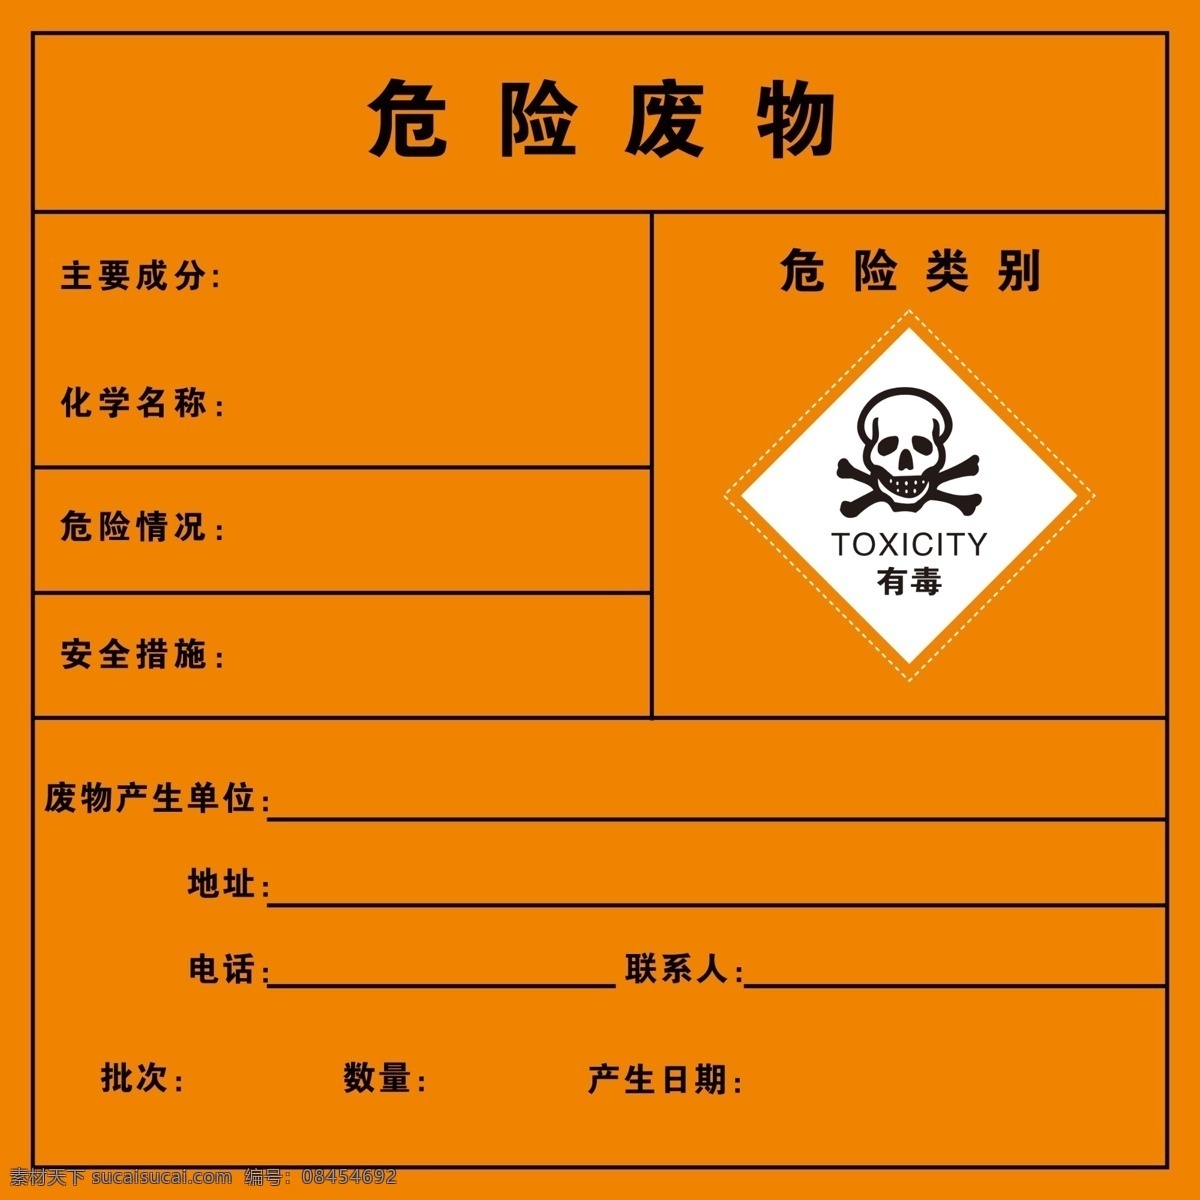 危险 废物 类别 危险废物 表牌 告示牌 有毒 标示 分类牌 标志图标 公共标识标志